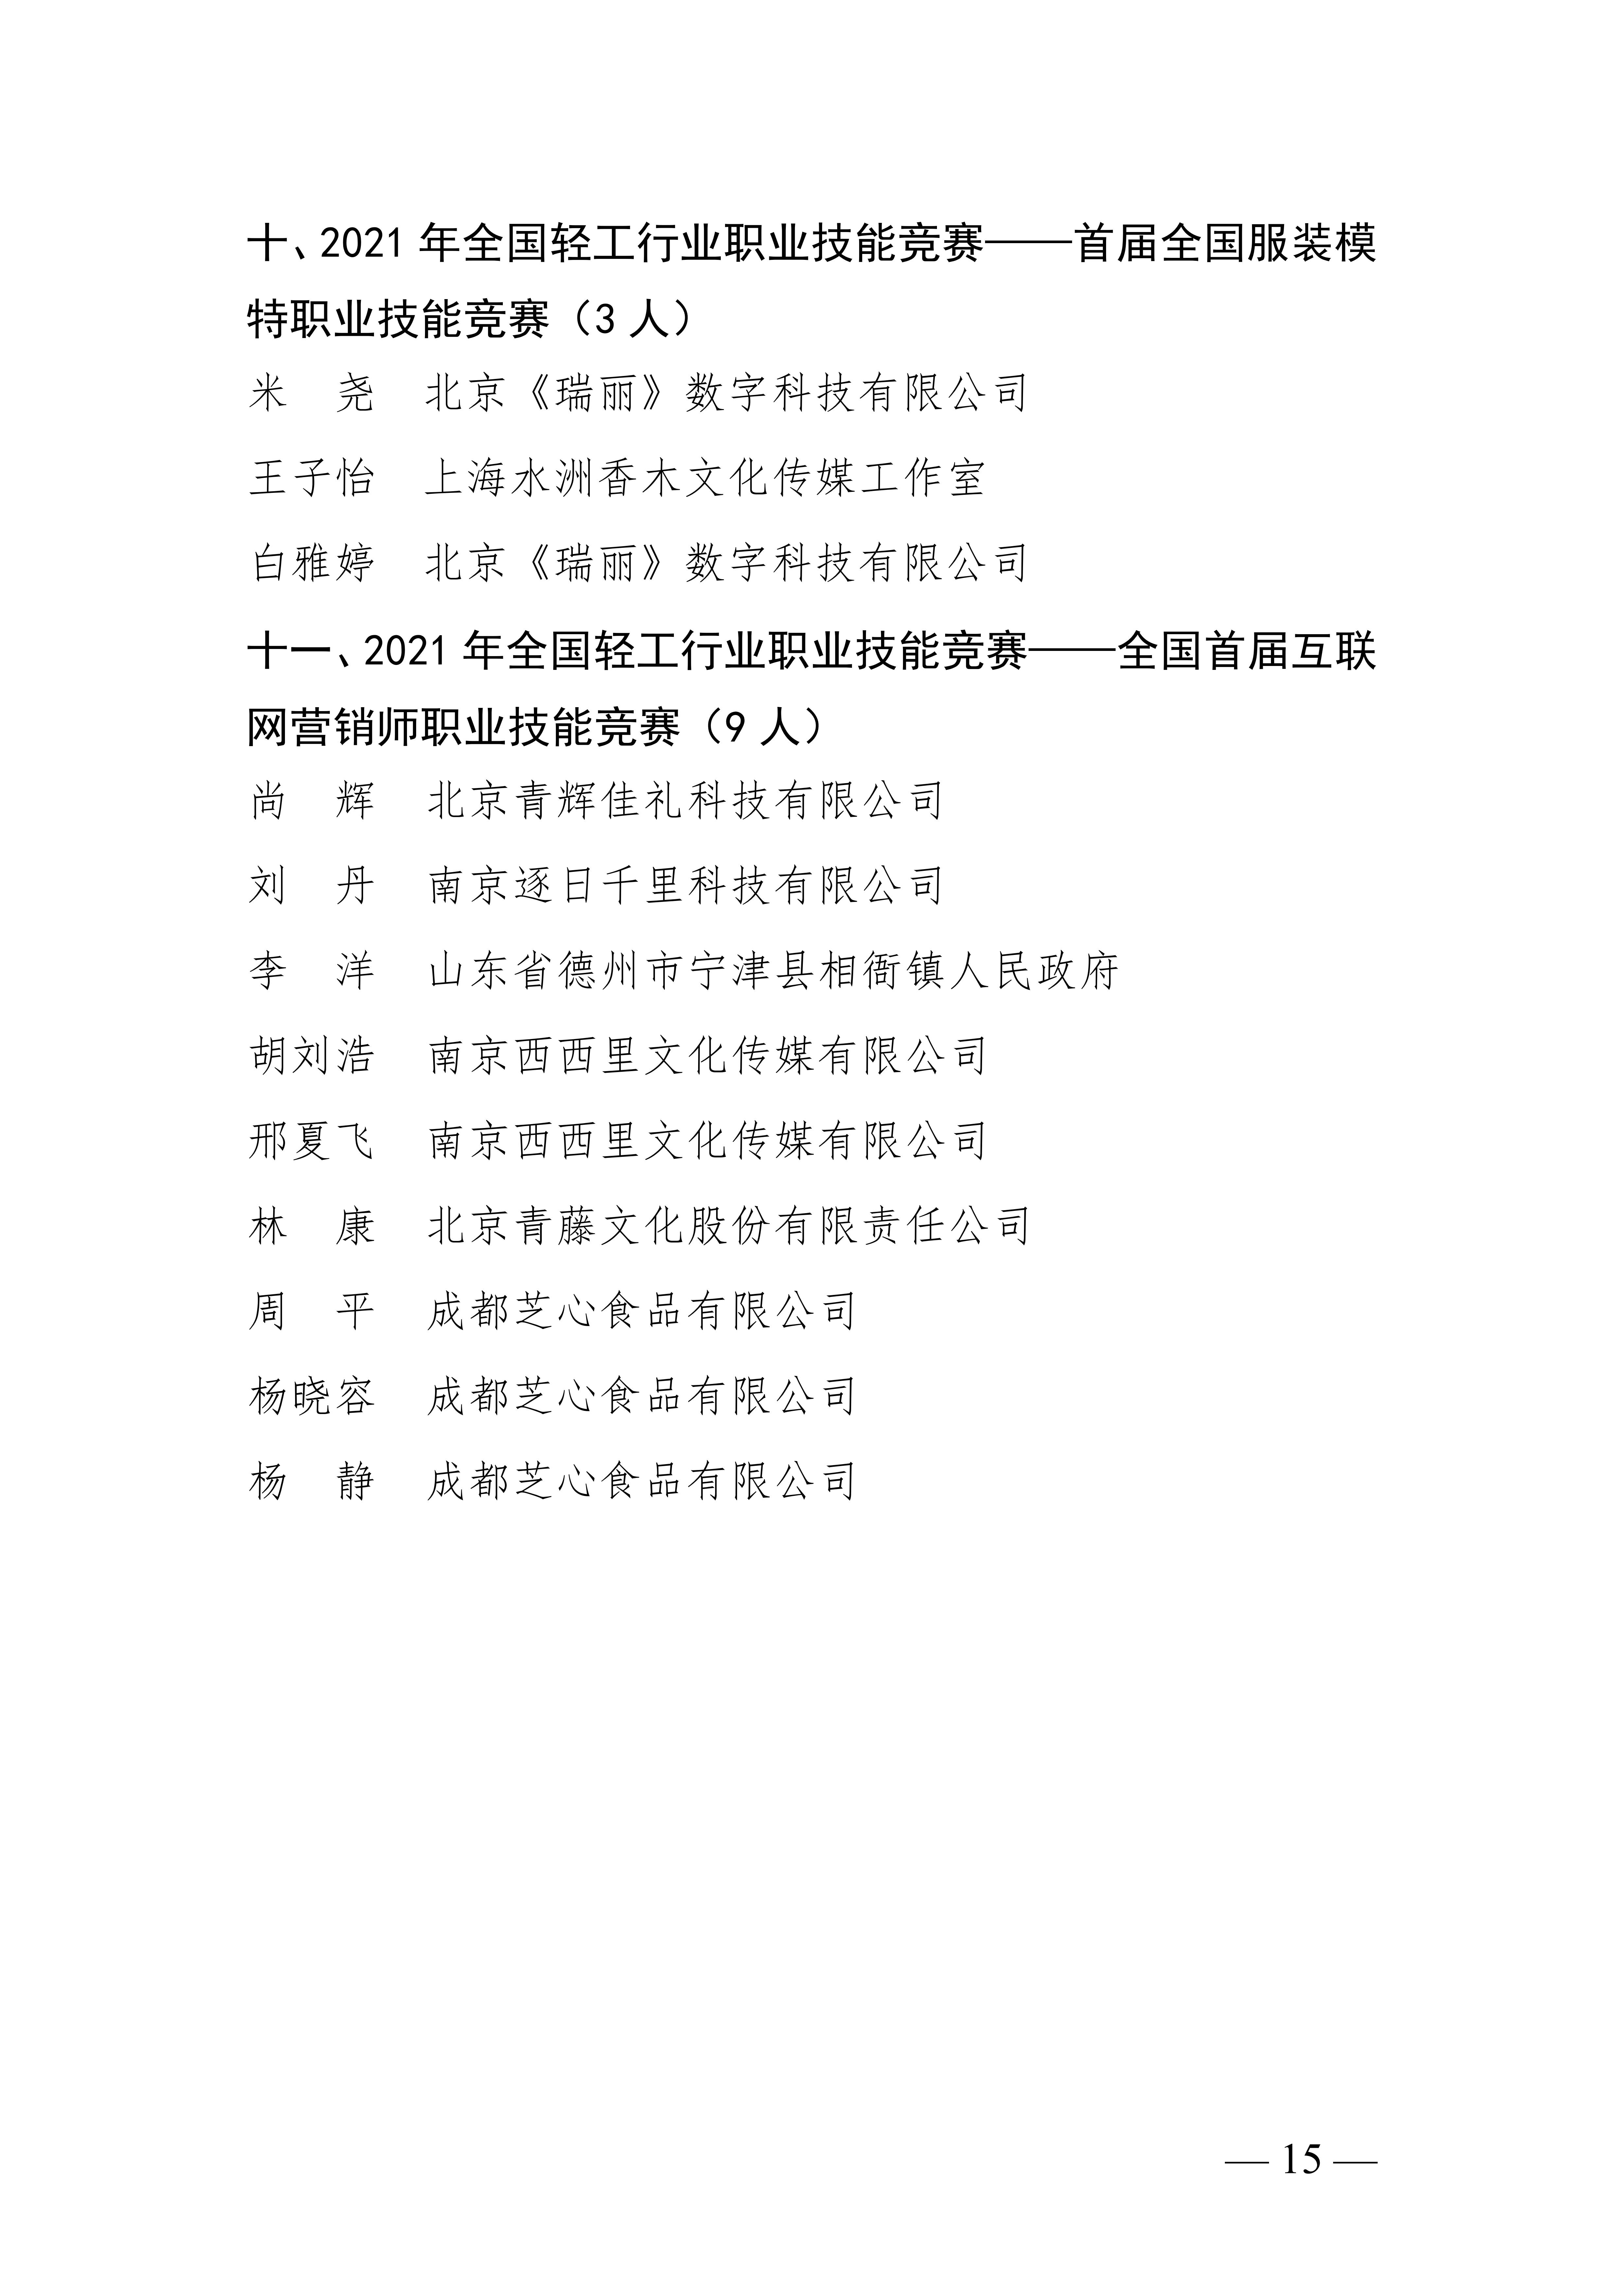 关于授予张宇鹏等252名同志“全国轻工技术能手”荣誉称号的决定_14.jpg